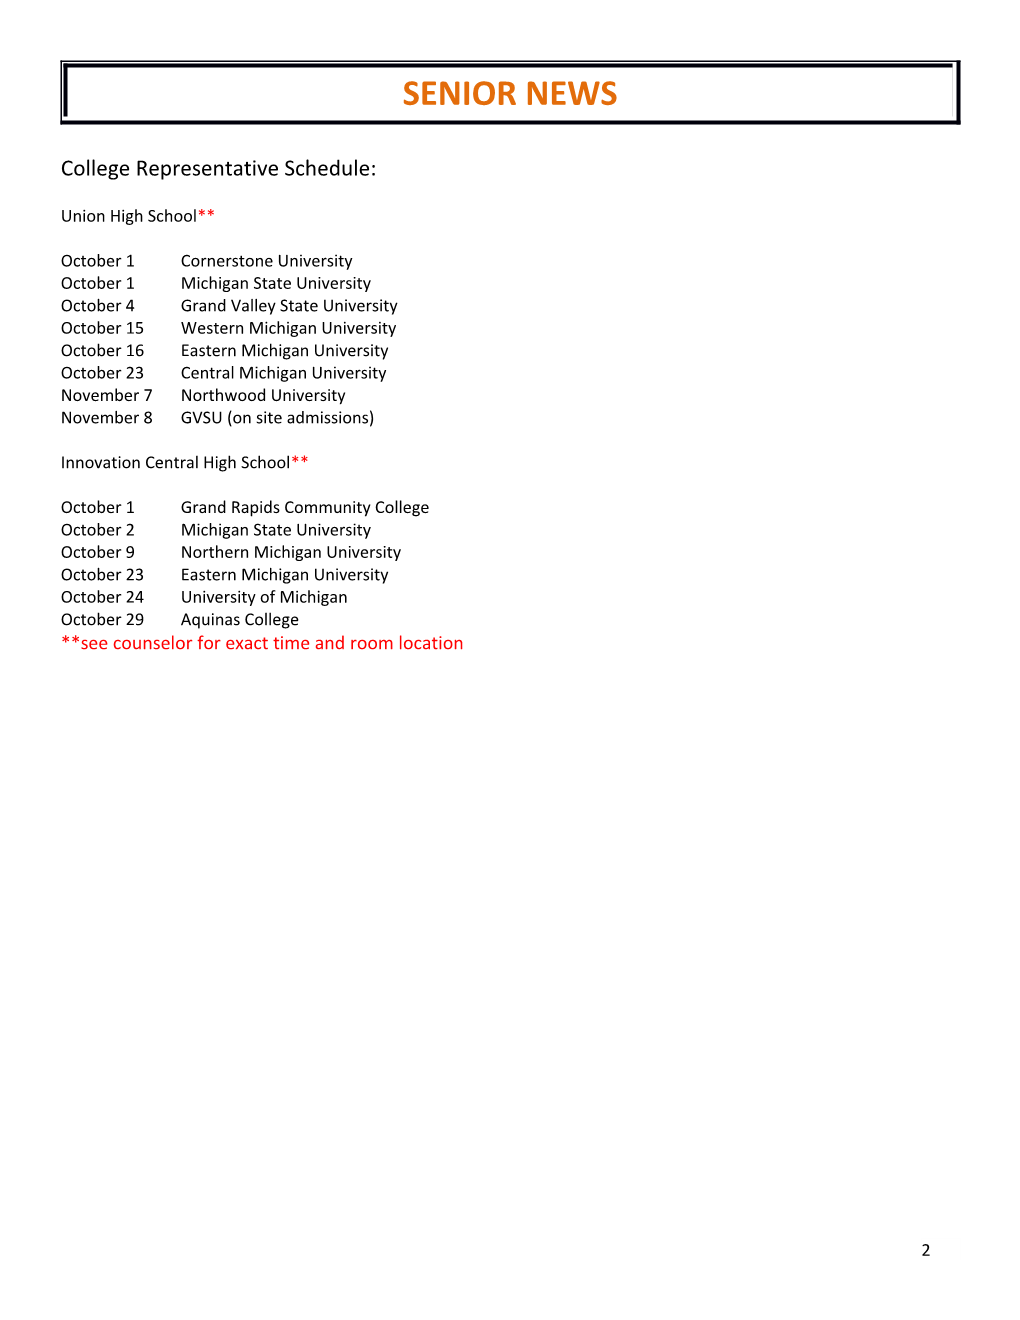 College Representative Schedule